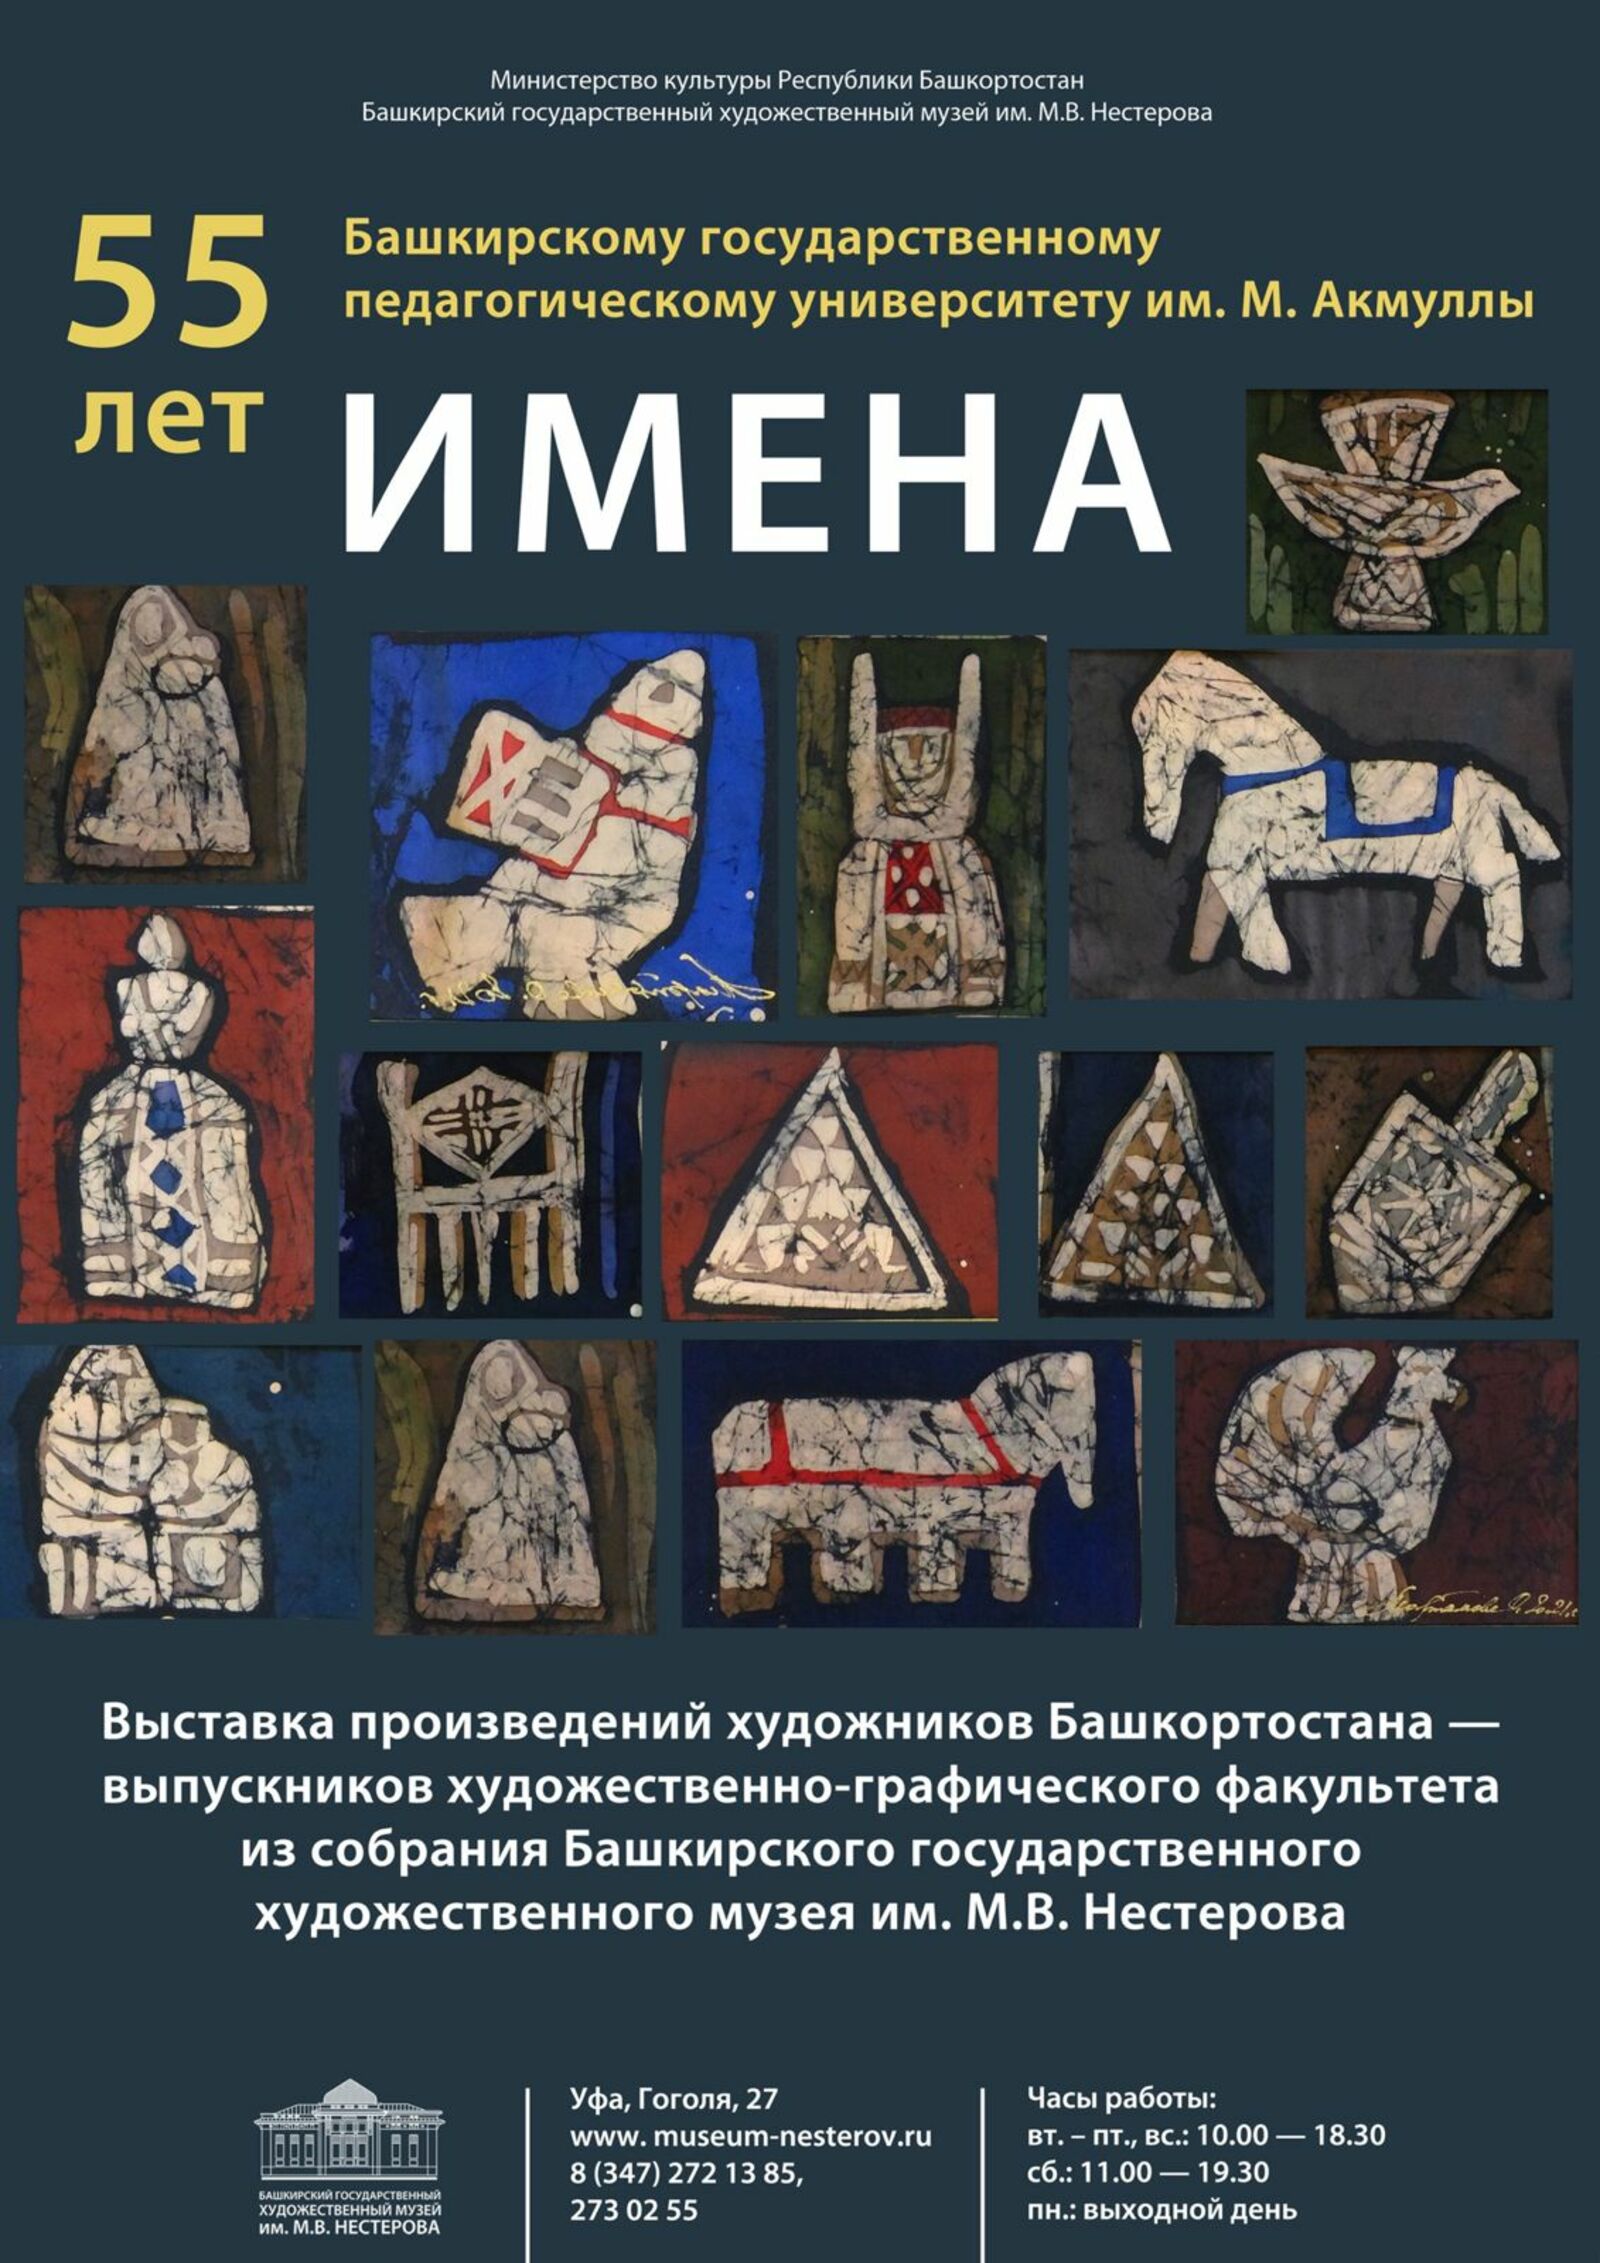 В музее им. М.В. Нестерова открылась выставка работ известных художников - выпускников худграфа БГПУ